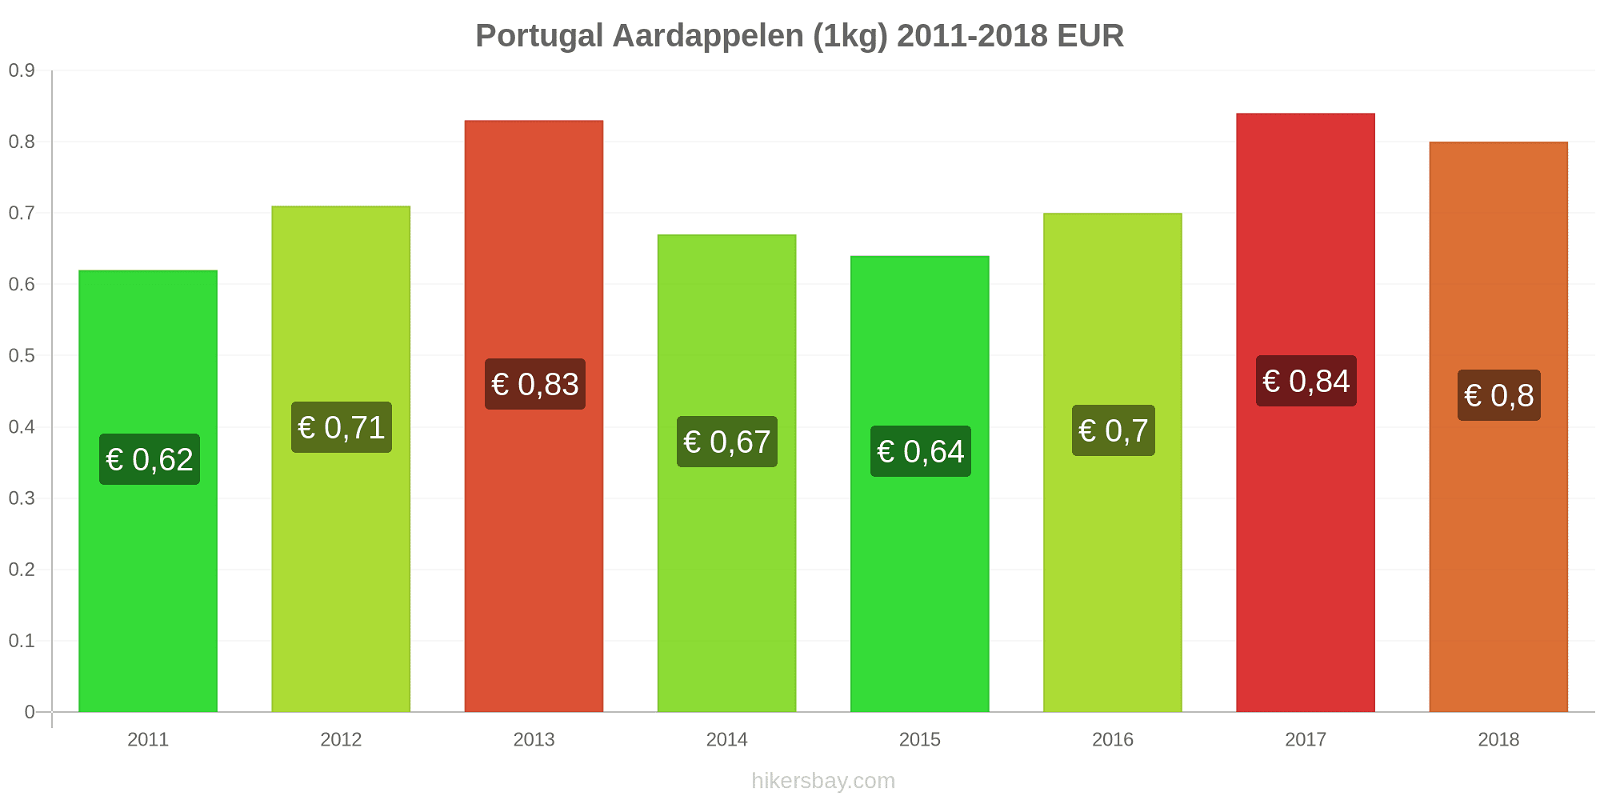 Portugal prijswijzigingen Aardappelen (1kg) hikersbay.com